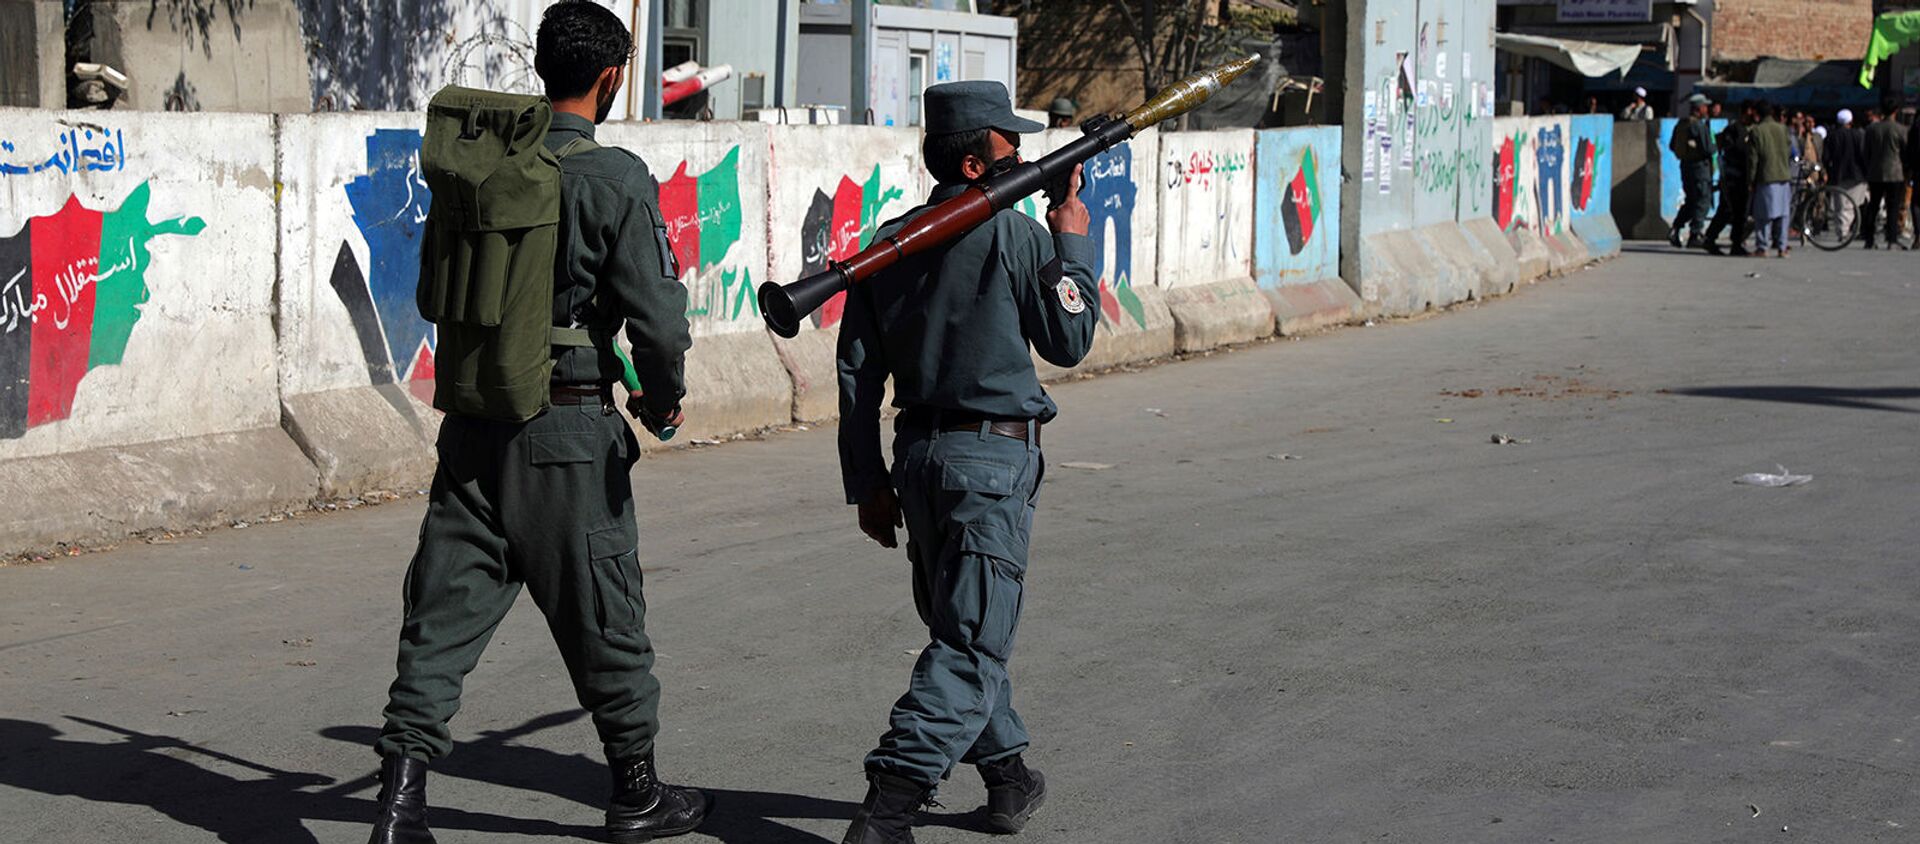 Афганские сотрудники Службы безопасности патрулируют с гранатометом на месте нападения на университет (2 ноября 2020). Кабул - Sputnik Արմենիա, 1920, 21.12.2020